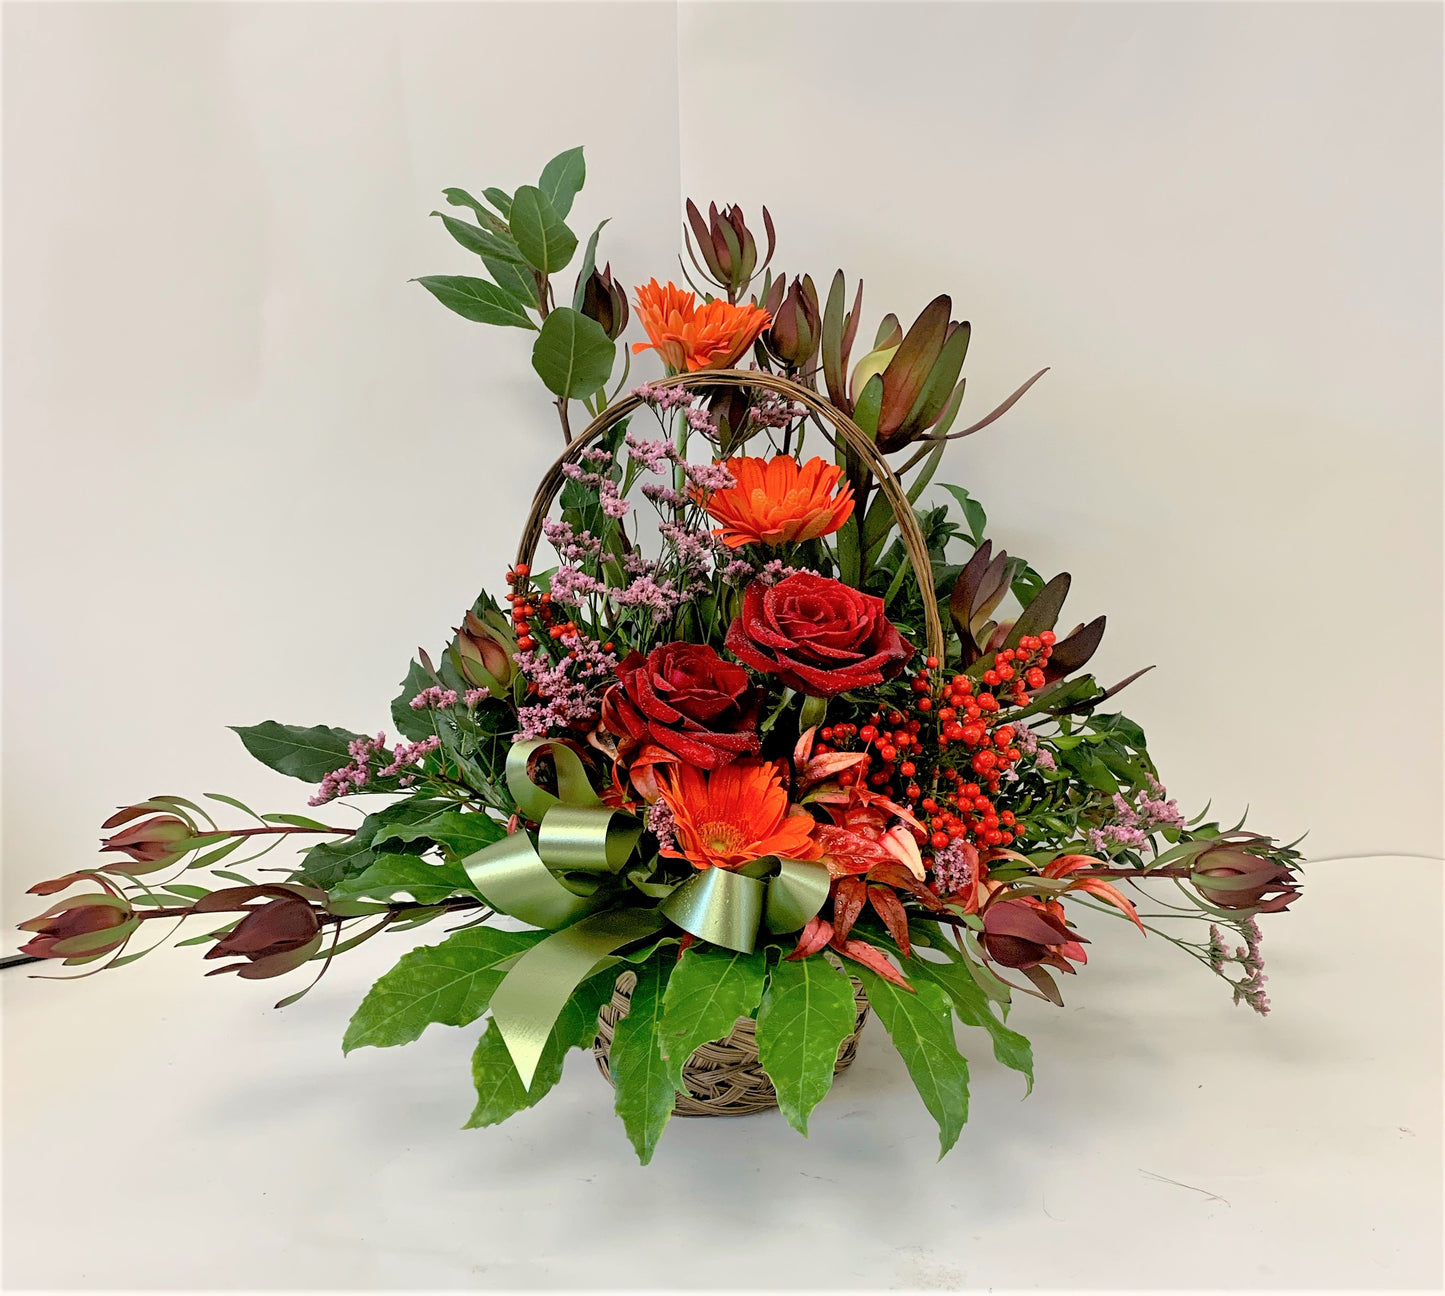 Fresh Flower Basket In Mixture of Reds